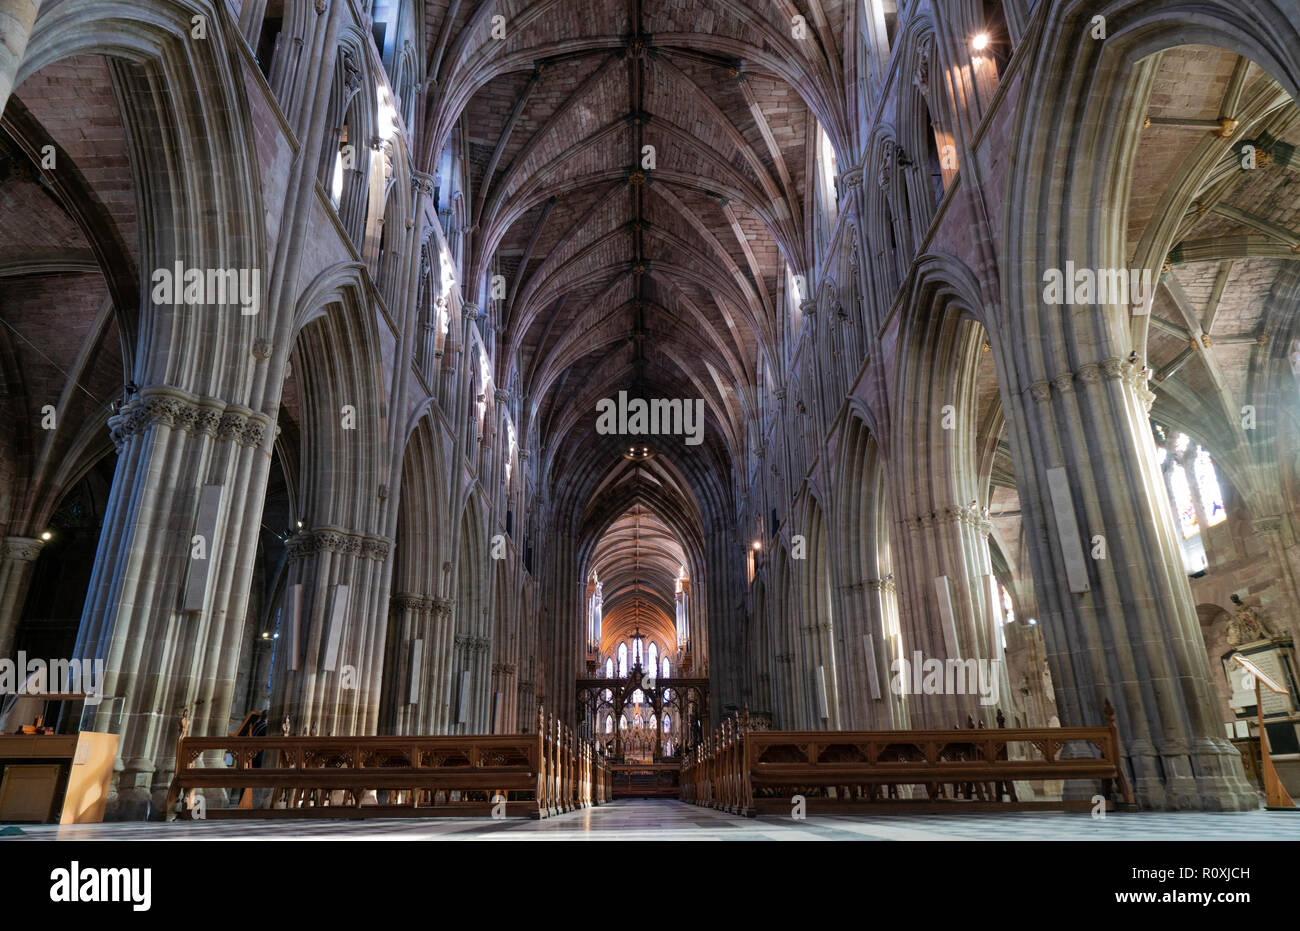 L'intérieur de la cathédrale de Worcester, Worcester, Royaume-Uni Banque D'Images